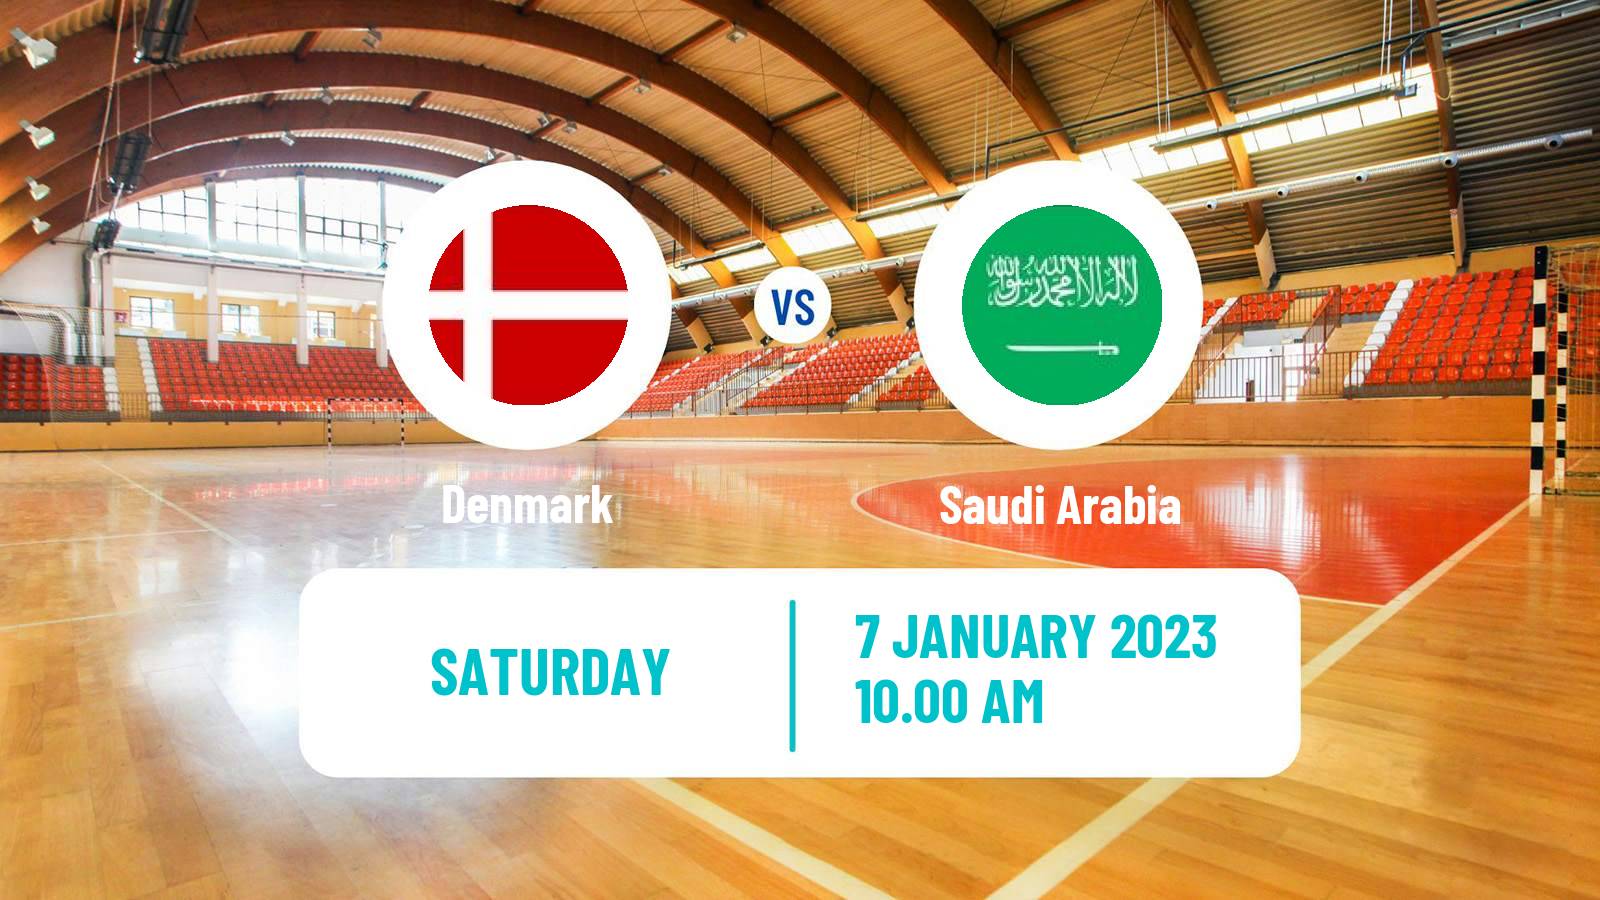 Handball Friendly International Handball Denmark - Saudi Arabia